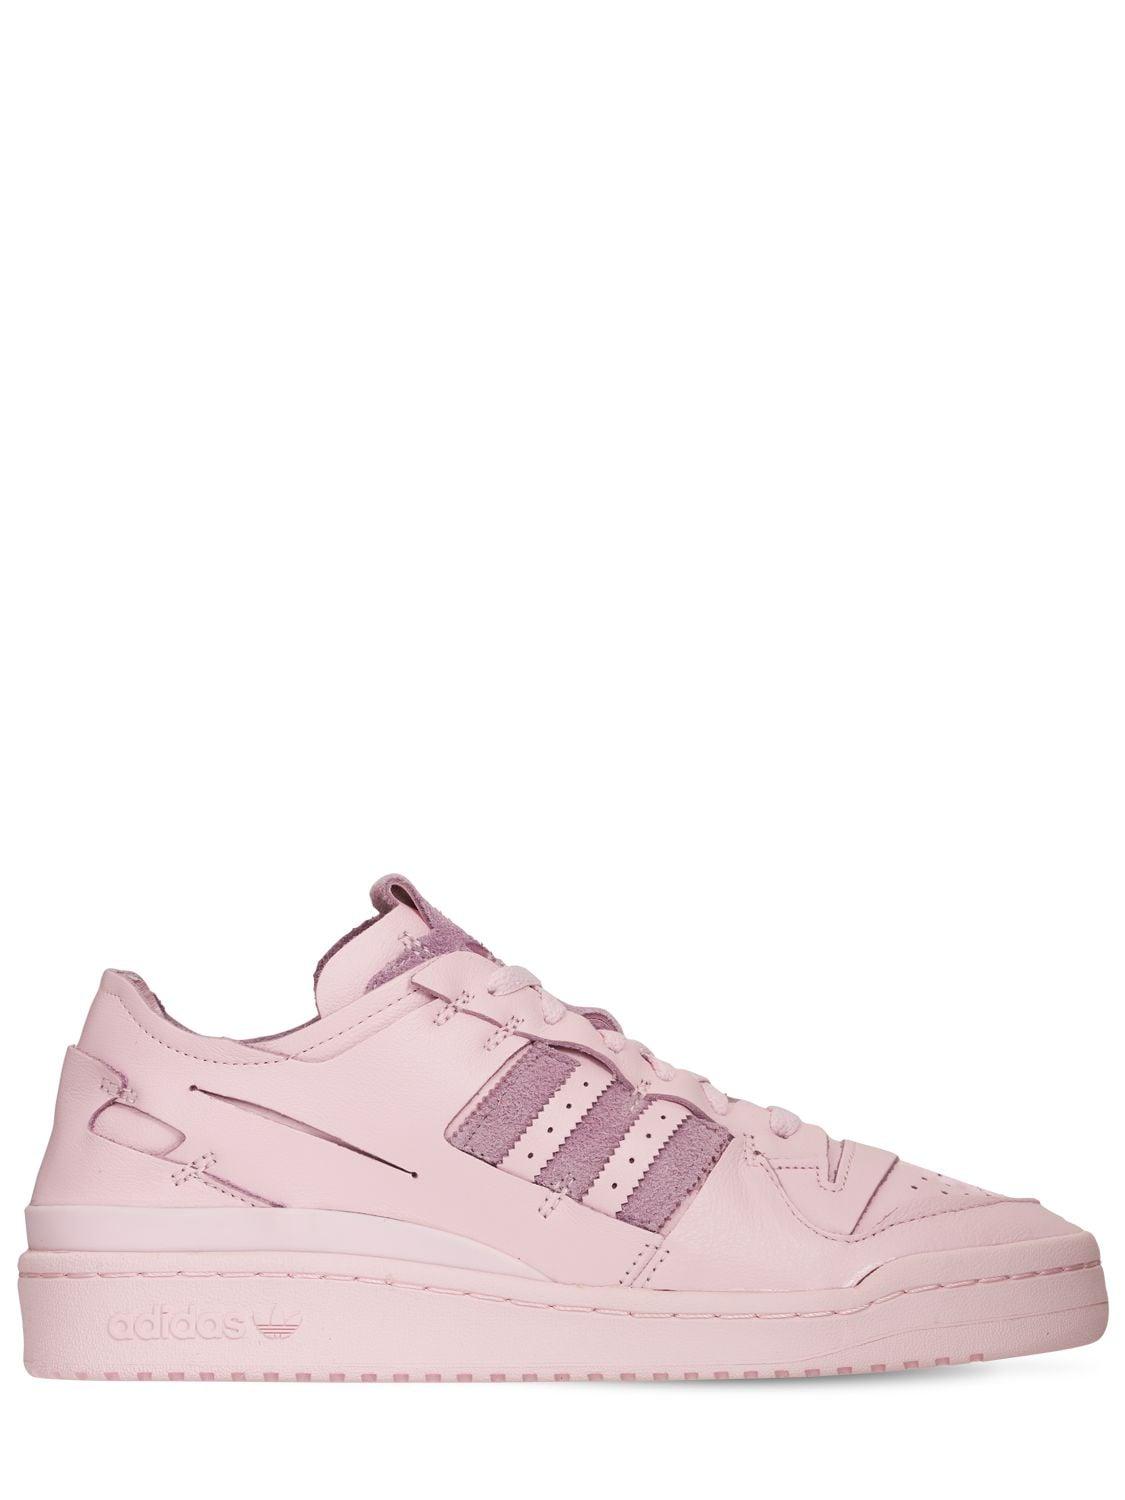 adidas Originals Forum 84 Low Sneakers in Pink for Men | Lyst